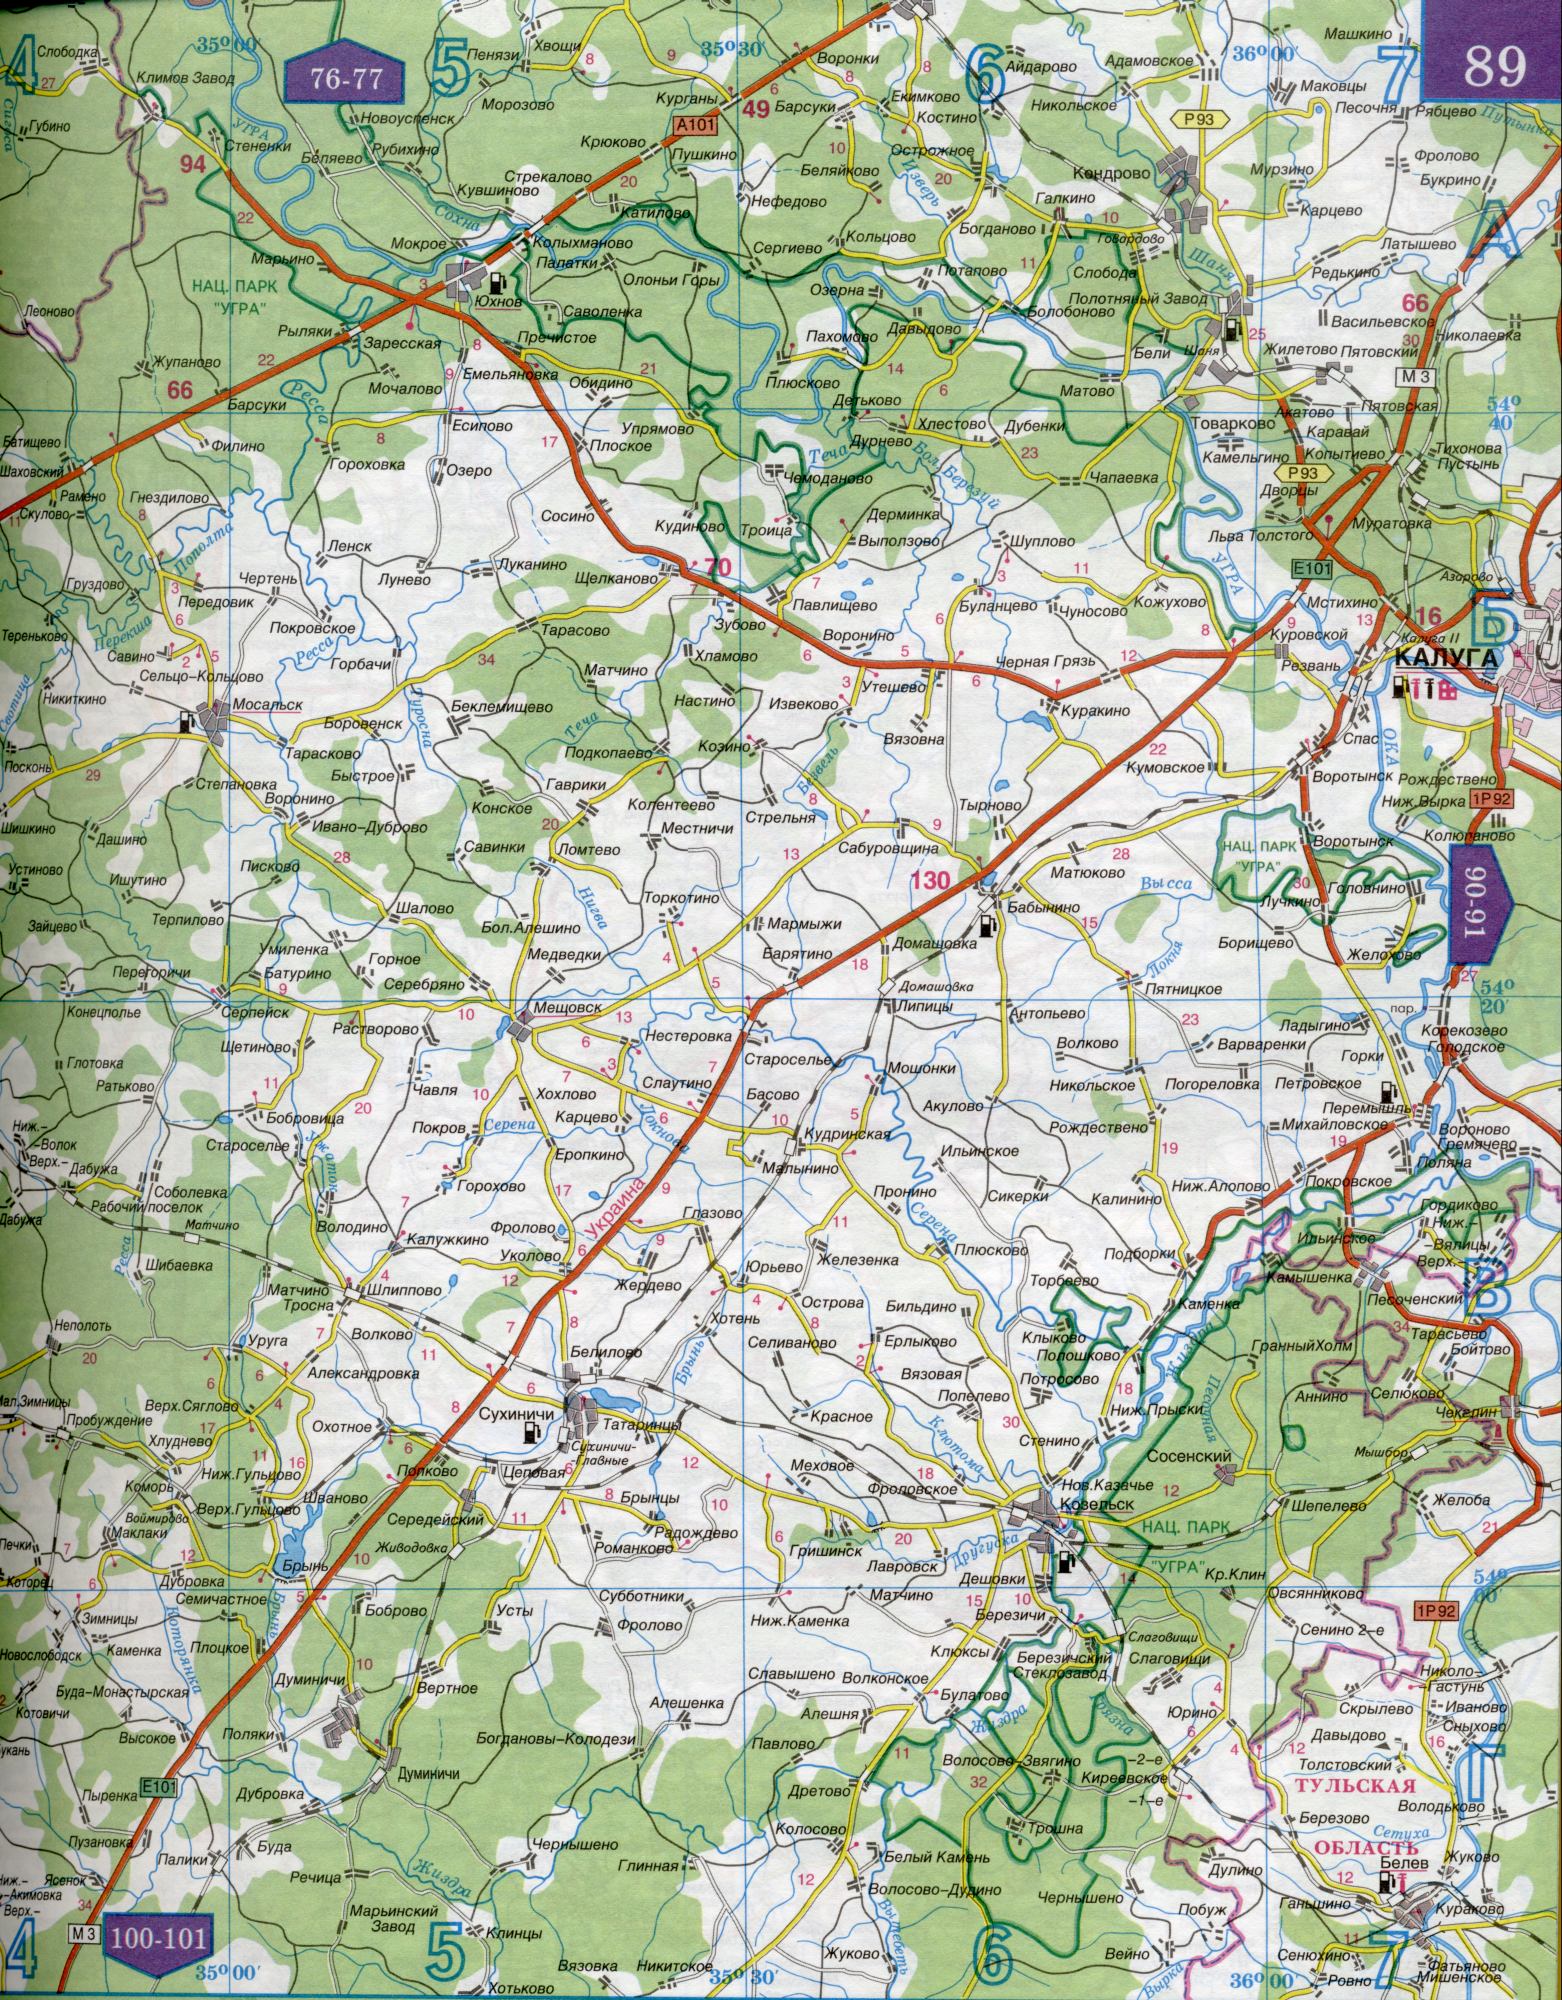 Карта Калужской области 1см=5км. Карта автомобильных дорог Калужская область. Скачать бесплатно подробную карту , B0 - река Угра